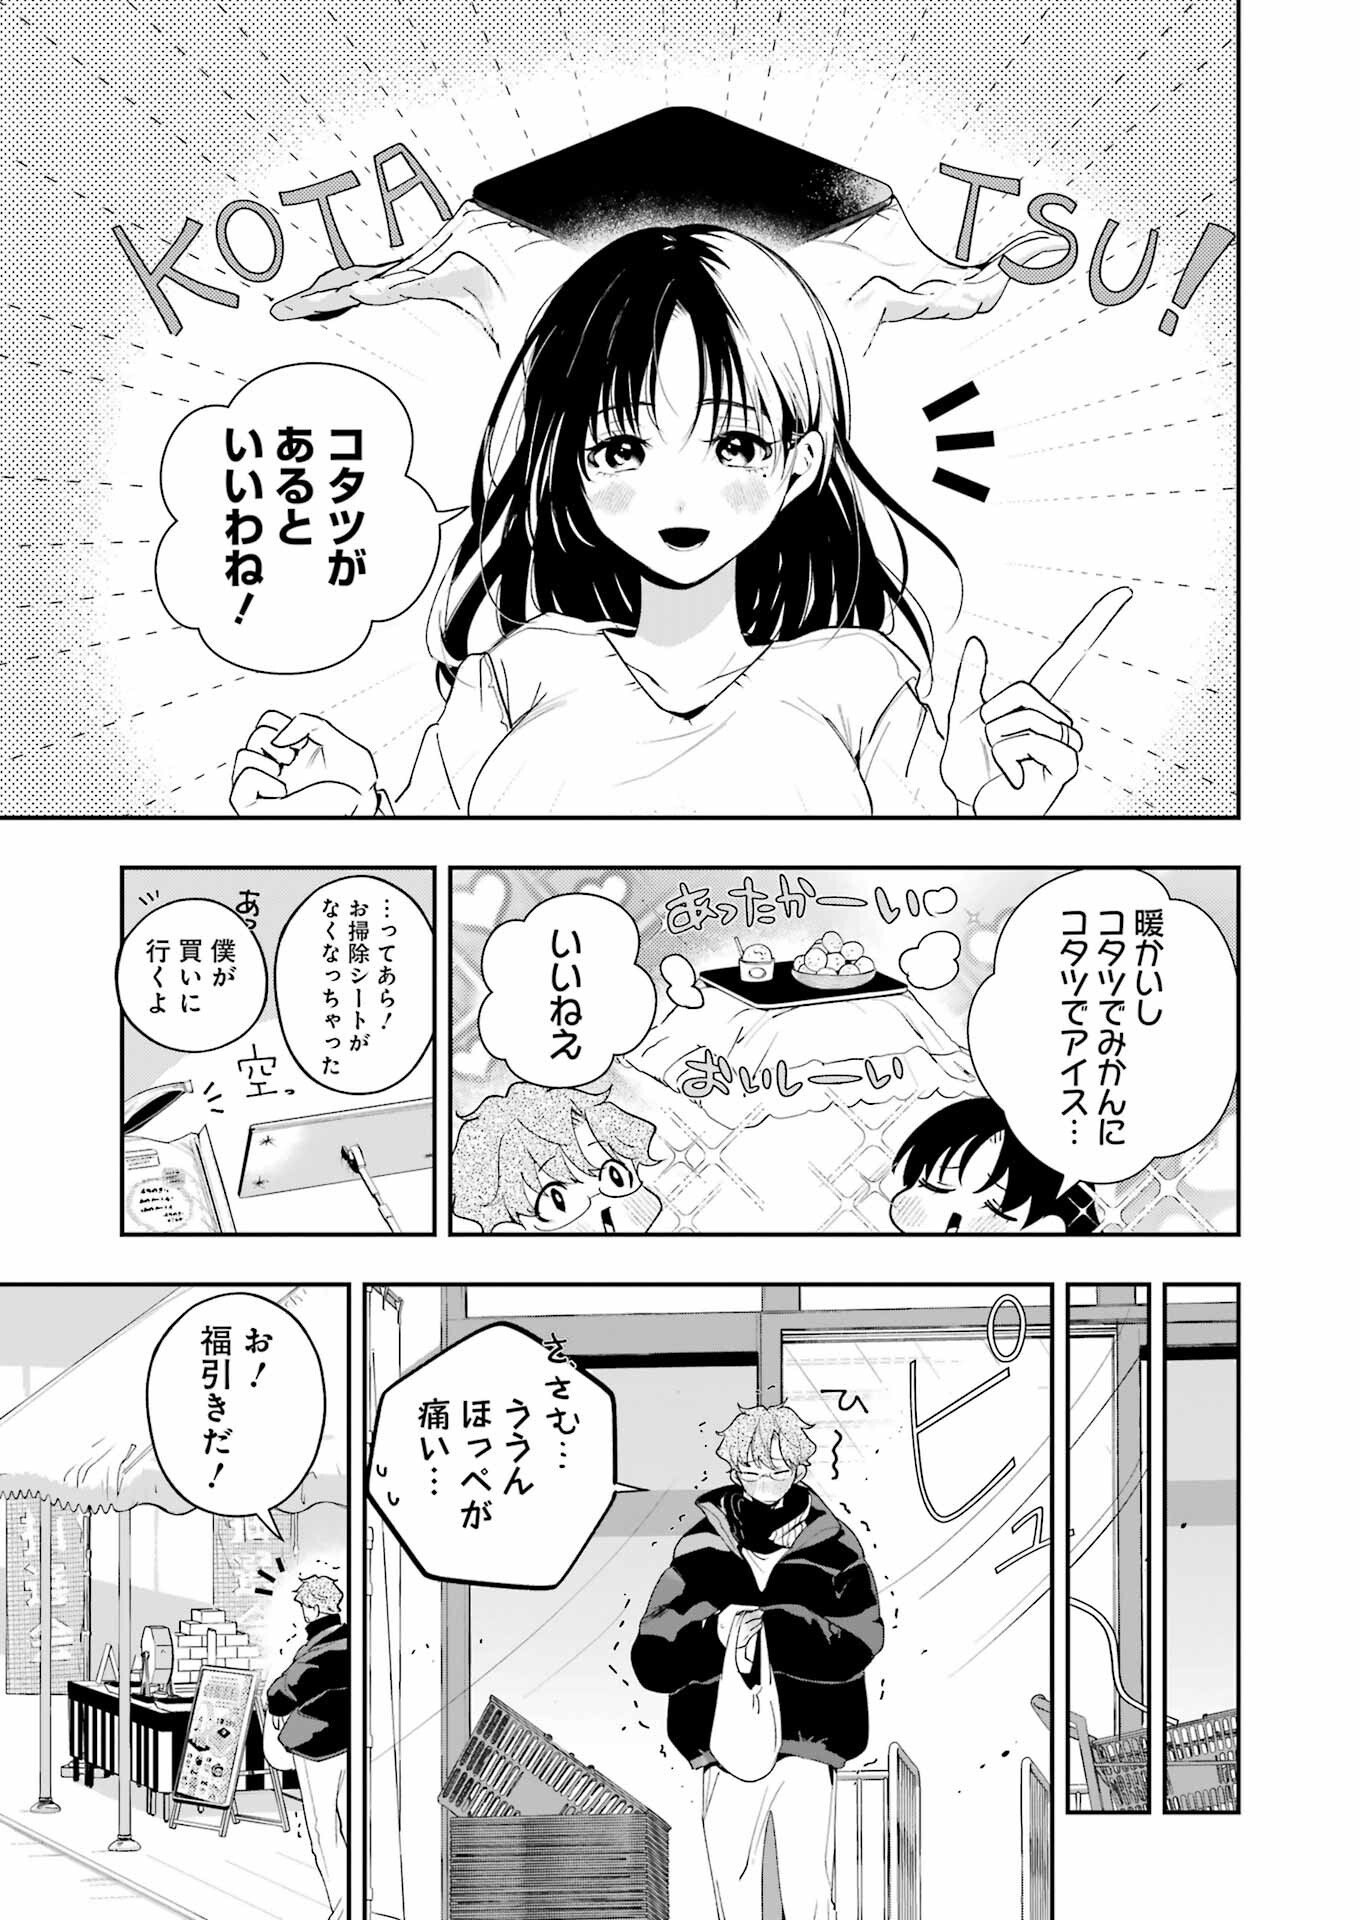 Tsuma wa Boku wo Futorasetai! - Chapter 17 - Page 3